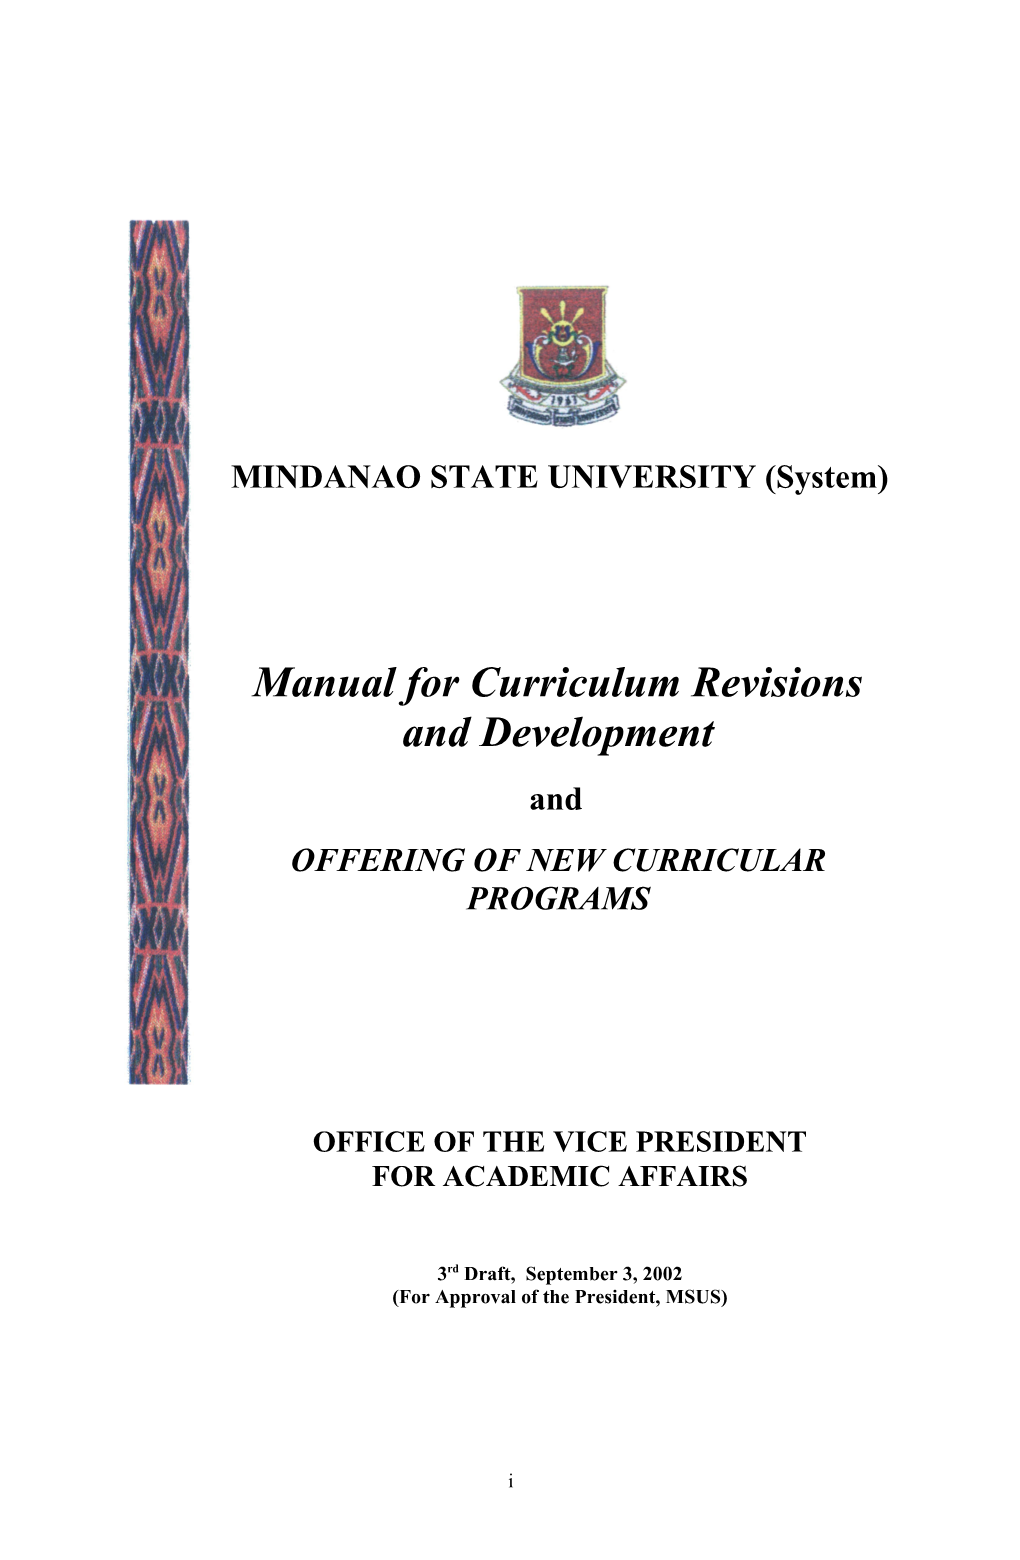 MINDANAO STATE UNIVERSITY (System)